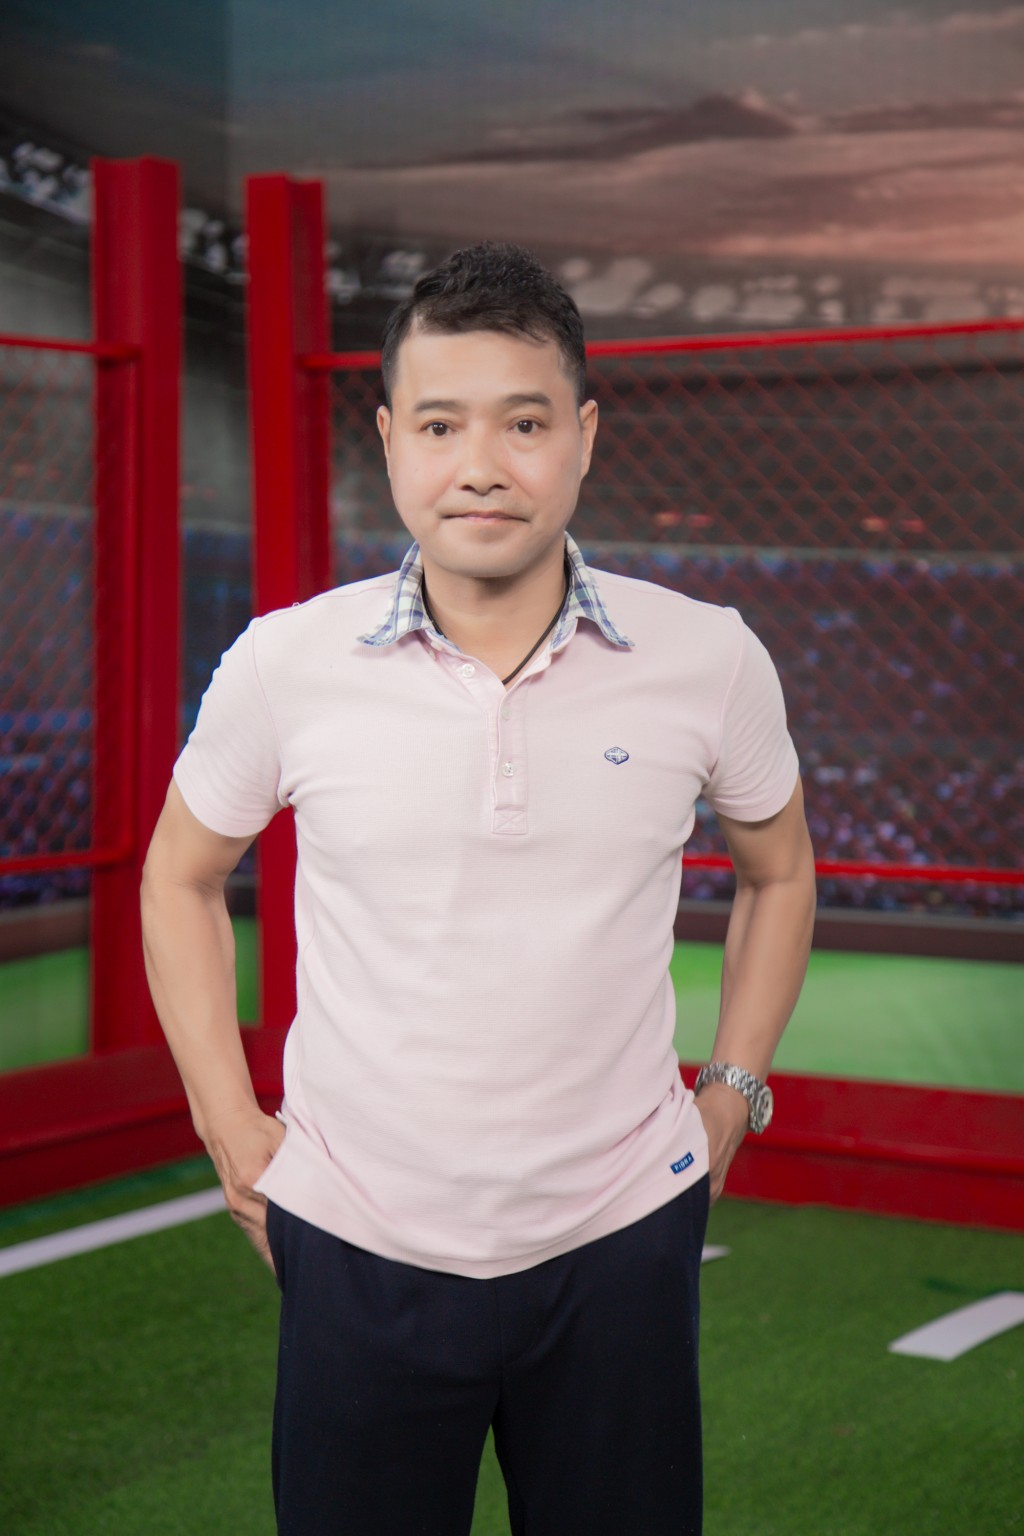 Tiêu chí chọn top 10 cầu thủ nhí của HLV Nguyễn Hồng Sơn và Vũ Như Thành